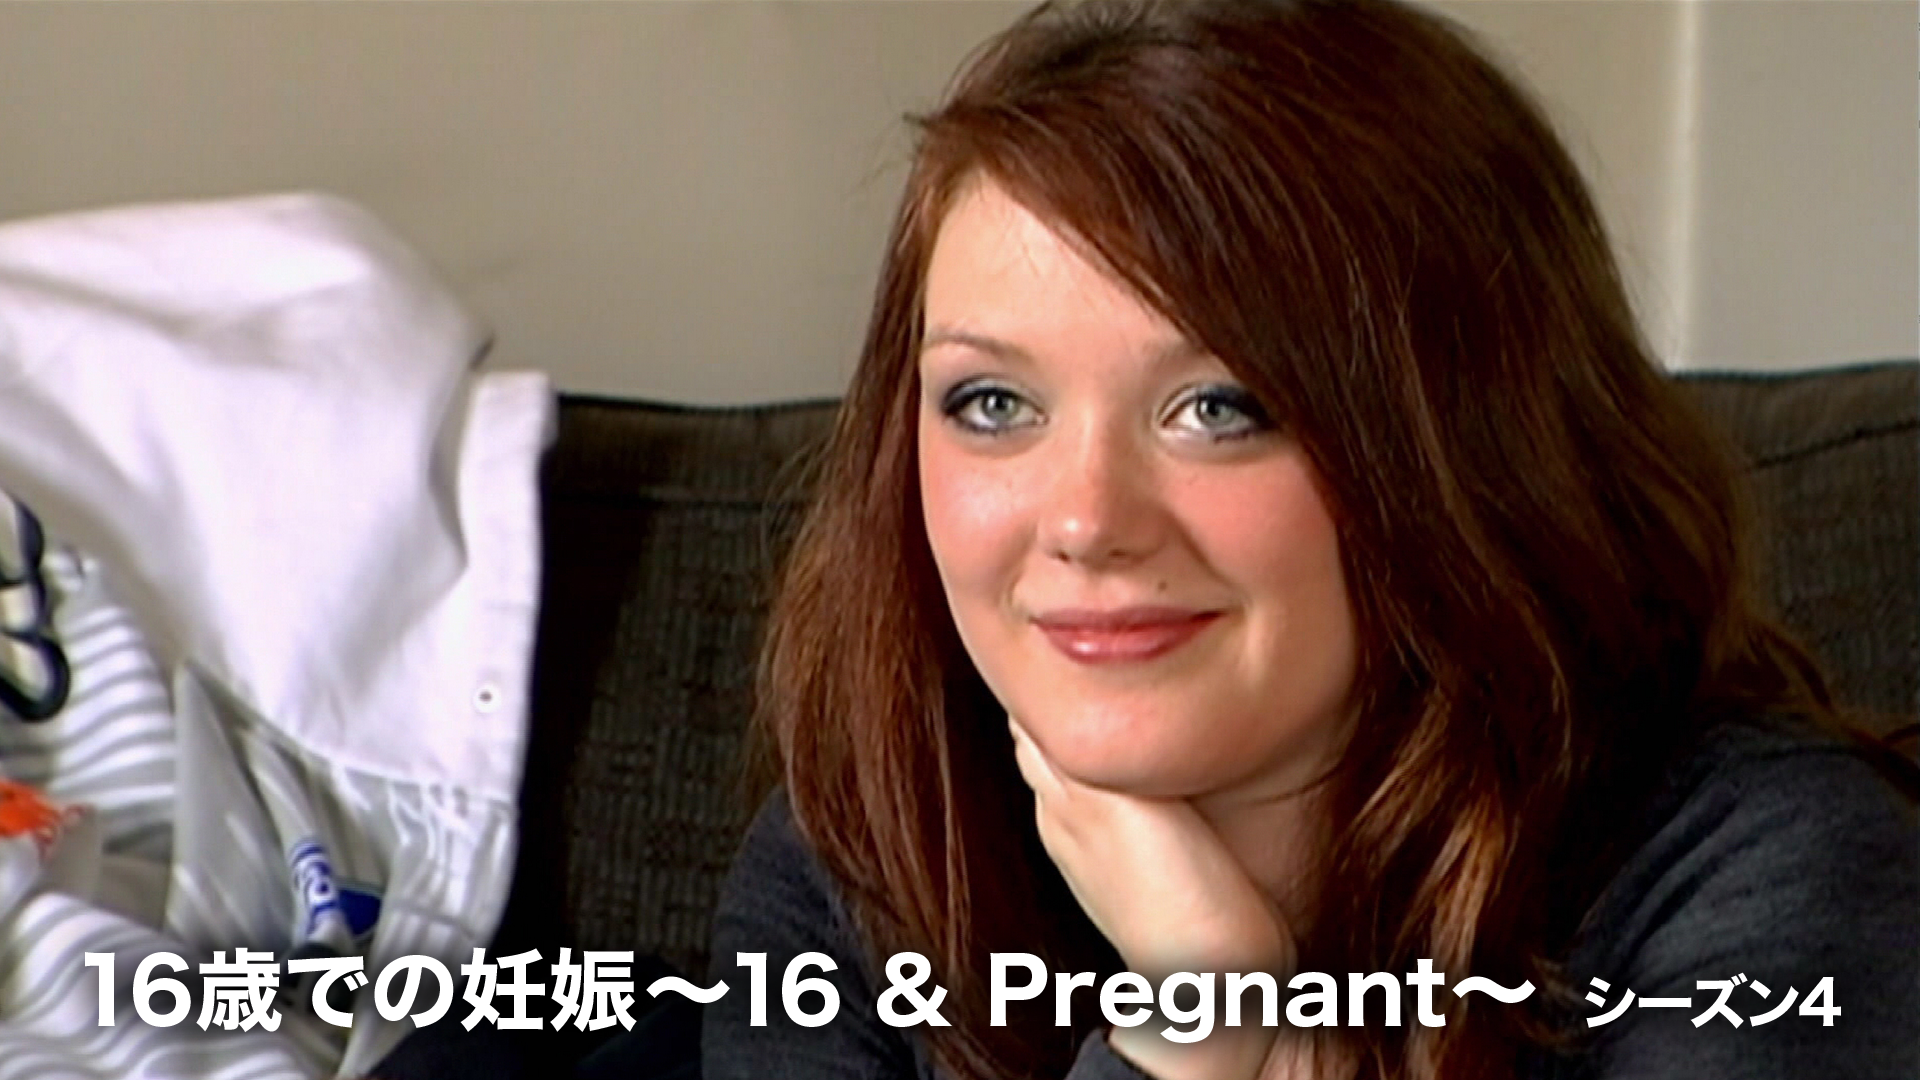 16歳での妊娠 ～16 & Pregnant～ シーズン4 動画